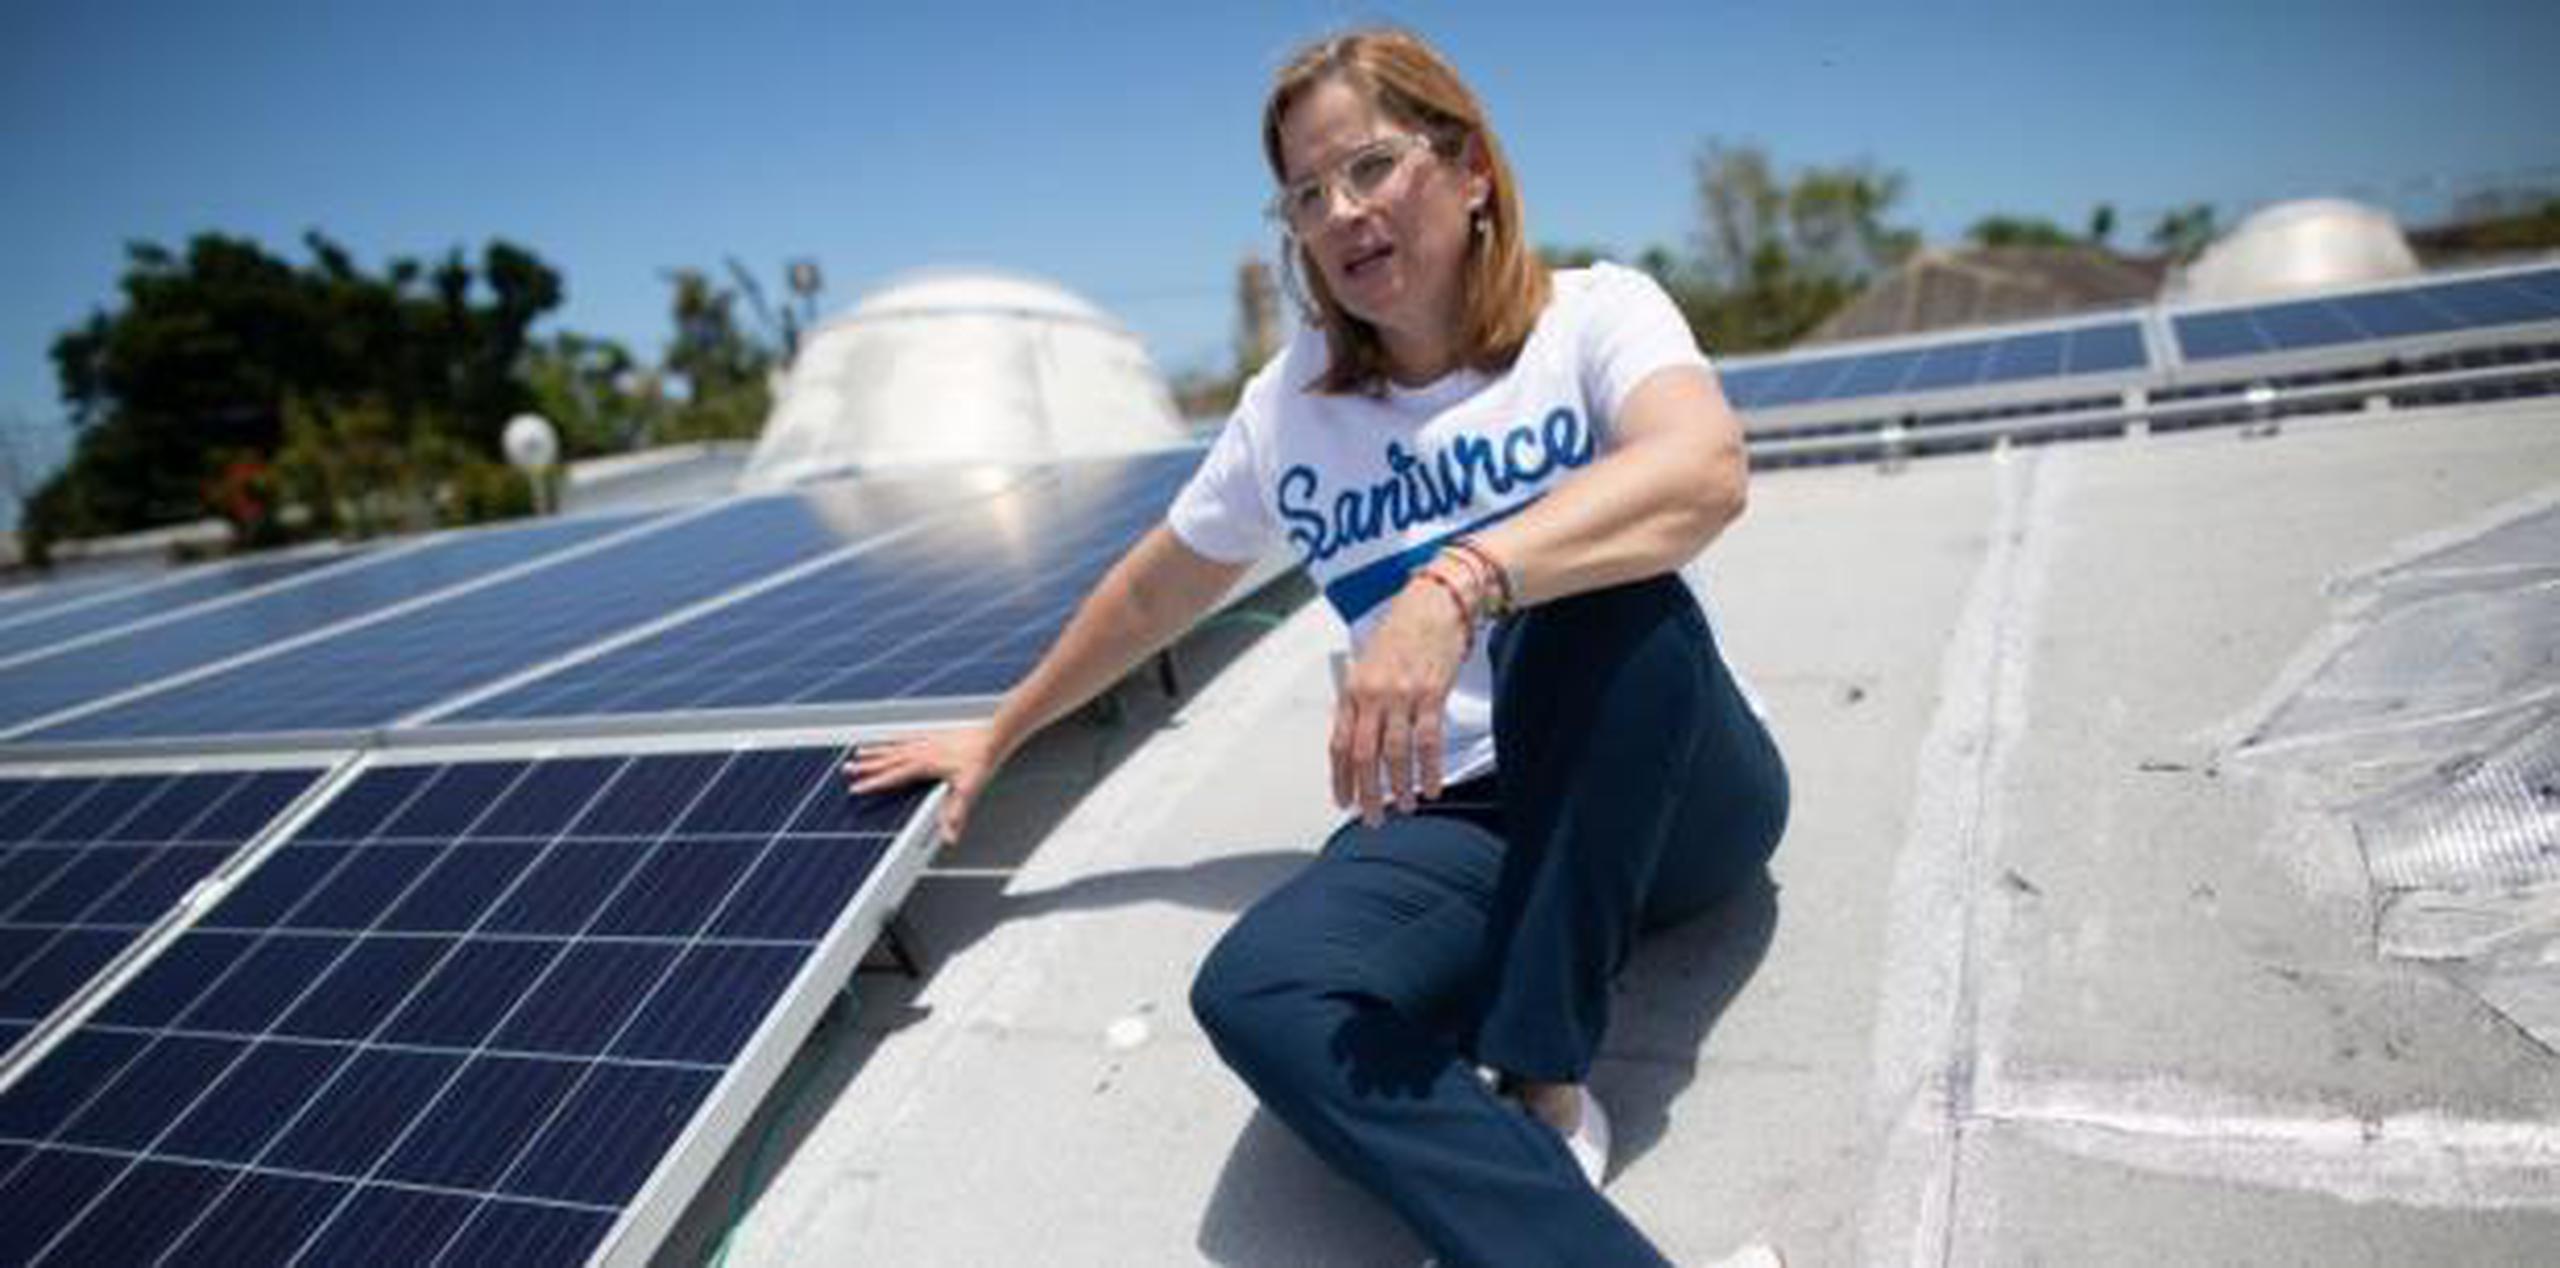 La alcaldesa de San Juan, Carmen Yulín Cruz Soto, dijo que para el verano del 2020 la plaza funcionará totalmente con energía solar. (xavier.araujo@gfrmedia.com)